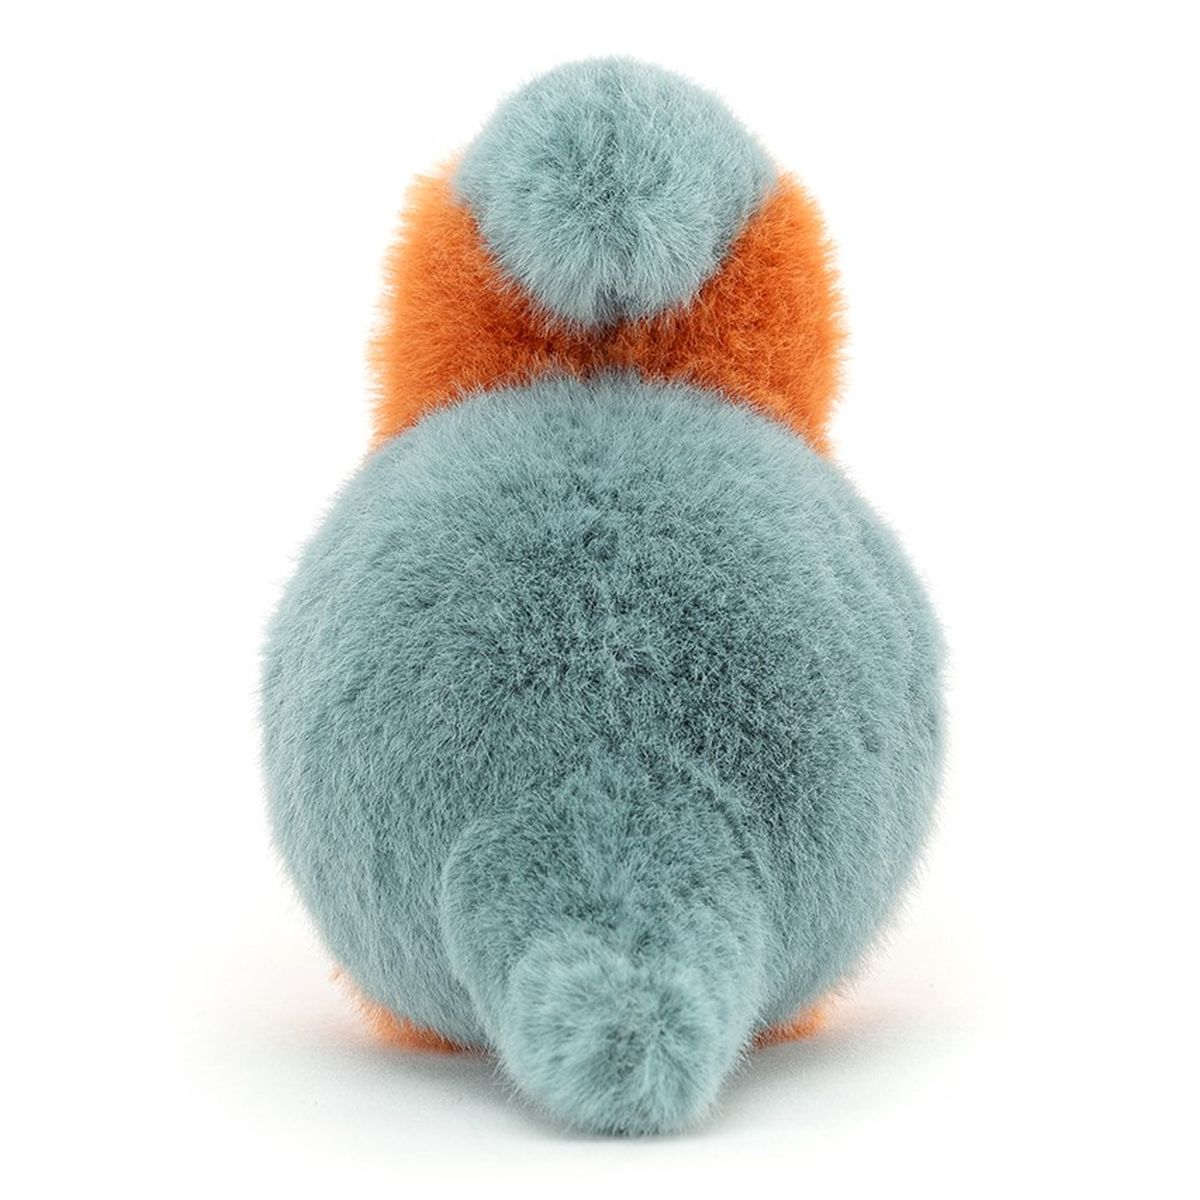 Eisvogel Plüschtier blau orange 16 cm Plüscheisvogel Teddys Rothenburg 